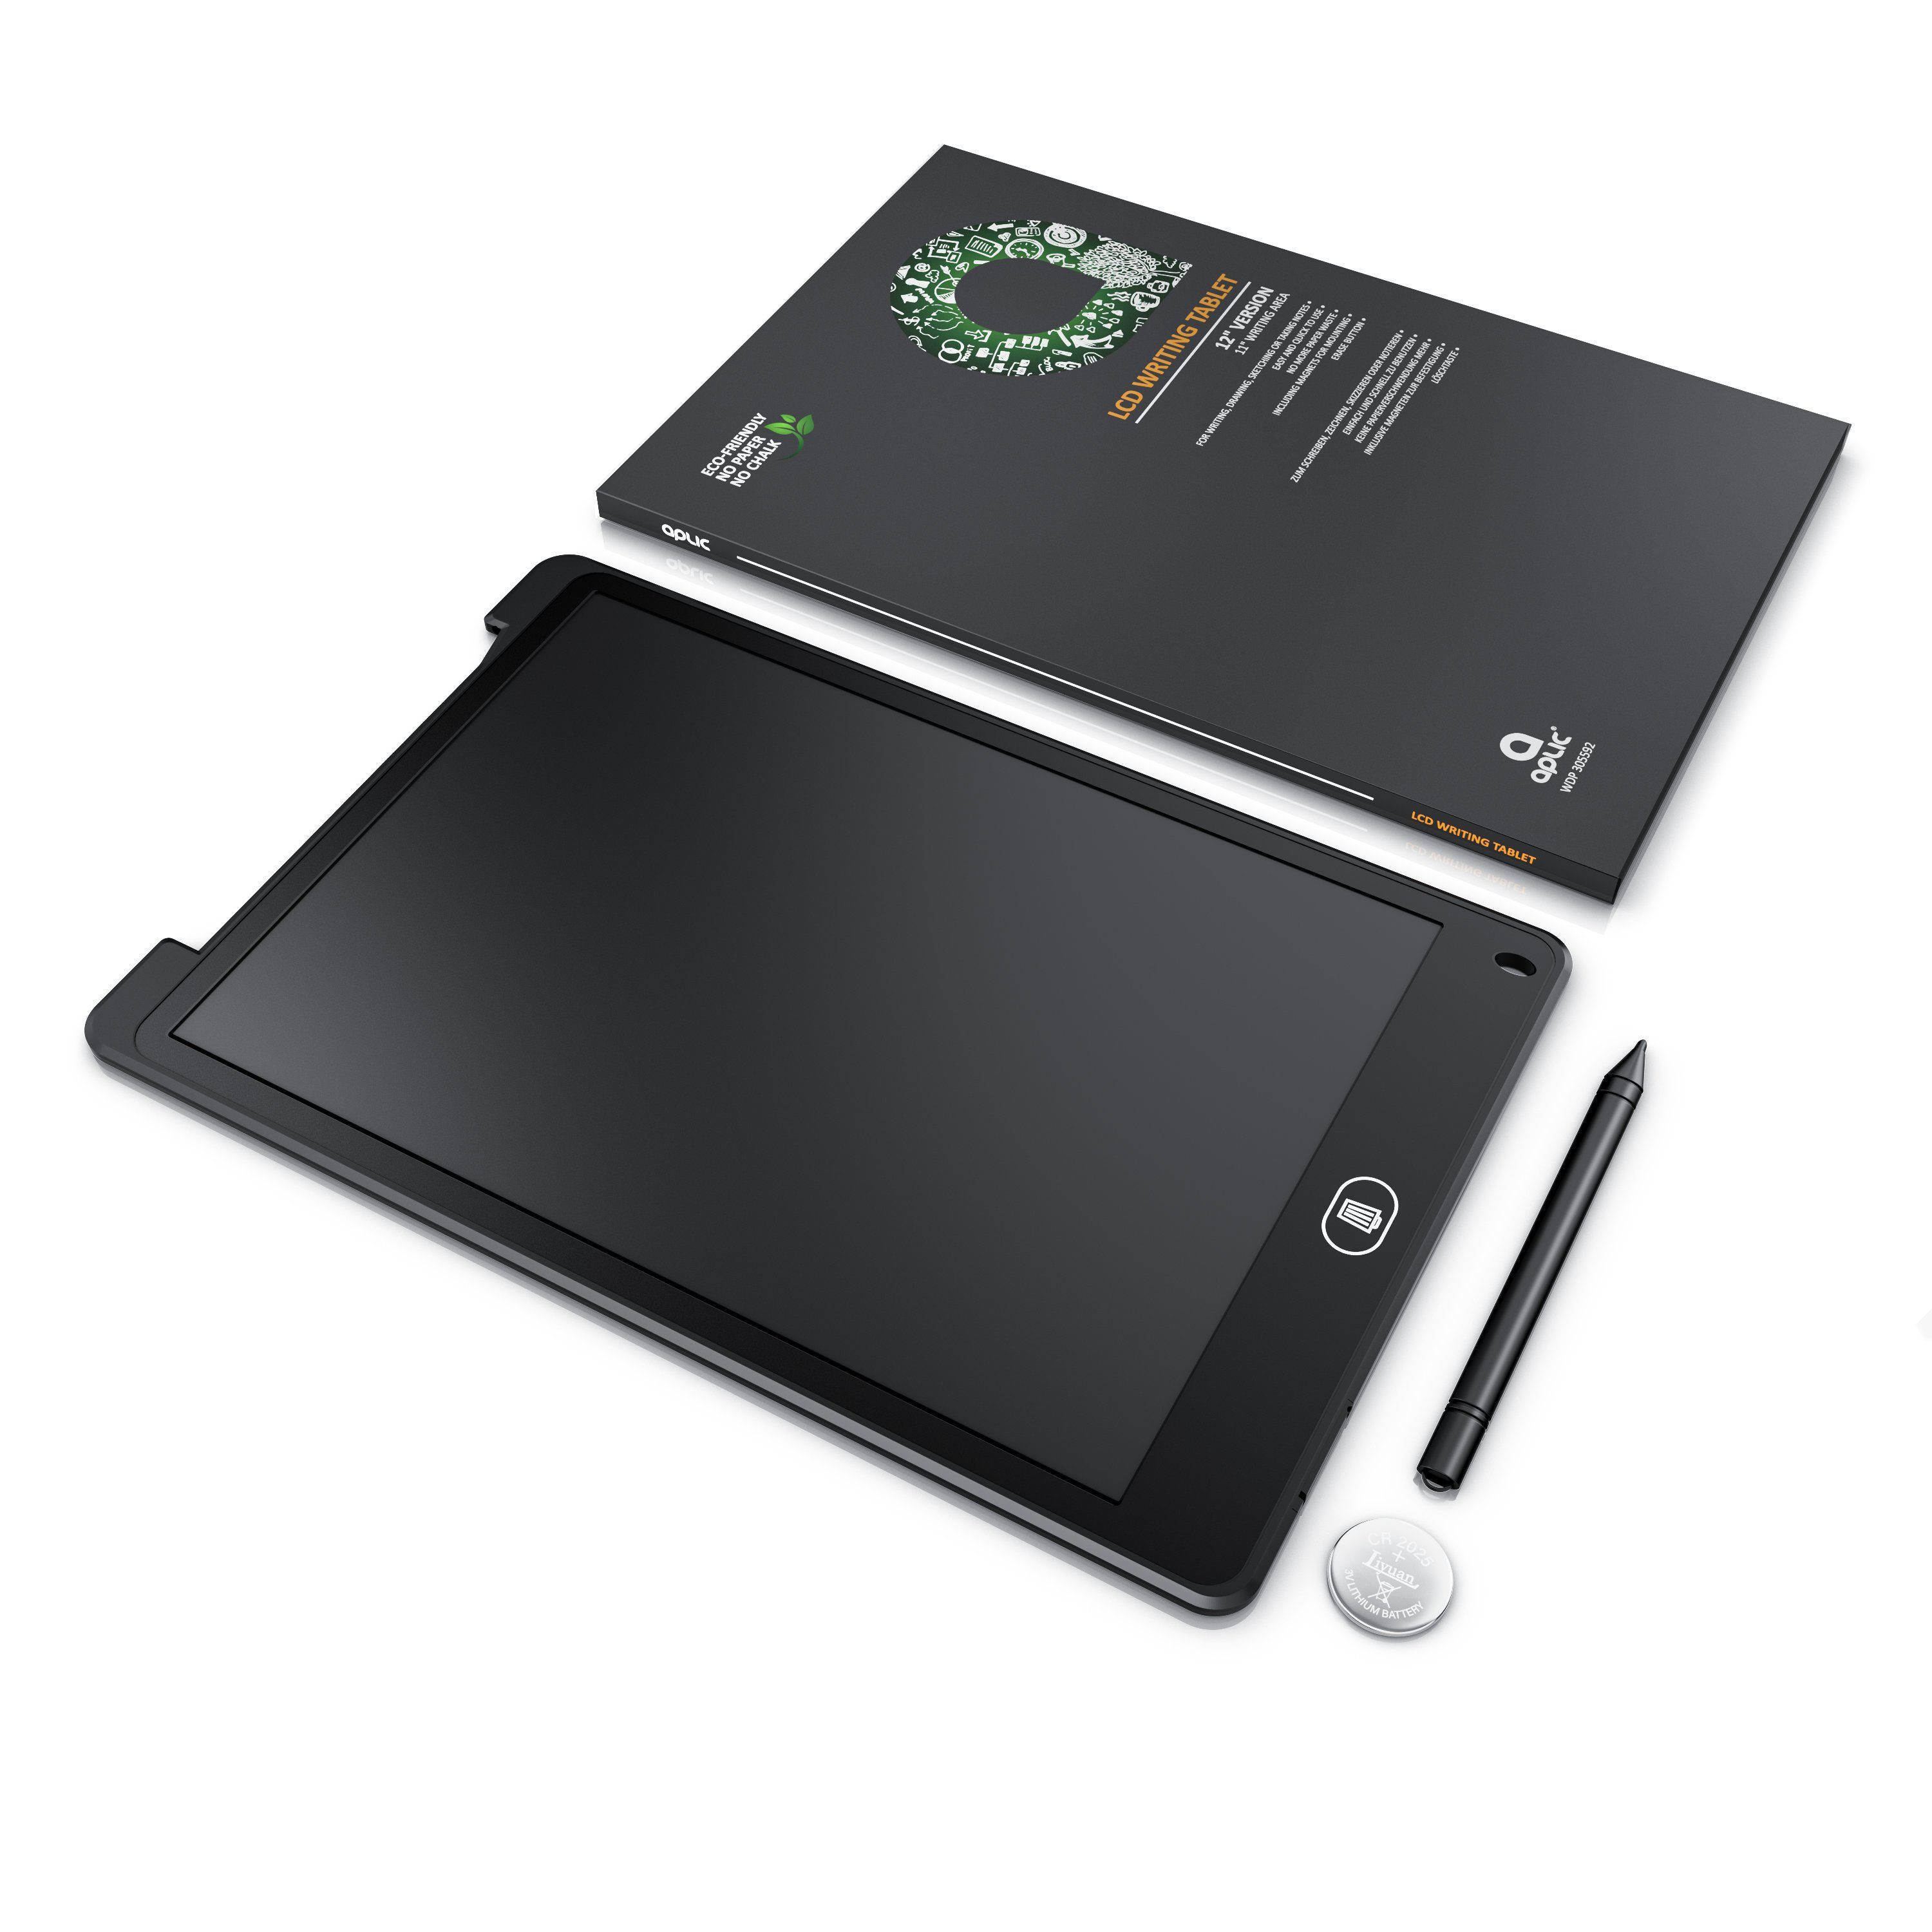 12 Zoll Elektronisches LCD Schreibbrett Digitales Zeichenbrett mit Stift Geschenk für Kinder und Erwachsene Schwarz VAENSONG LCD Writing Tablet